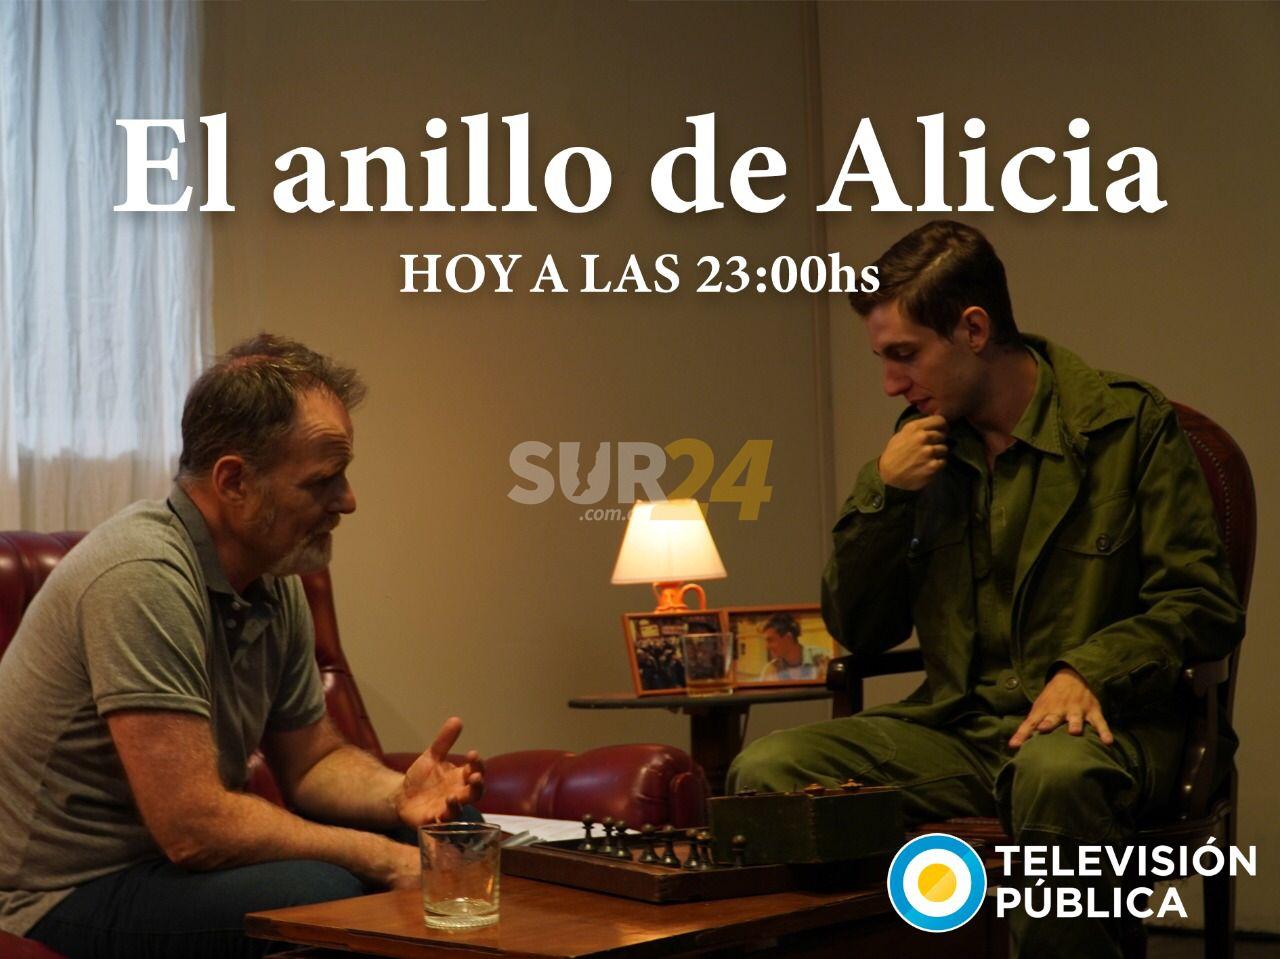 Hoy se emite “El anillo de Alicia”, dirigido por el venadense Francisco Bonadeo